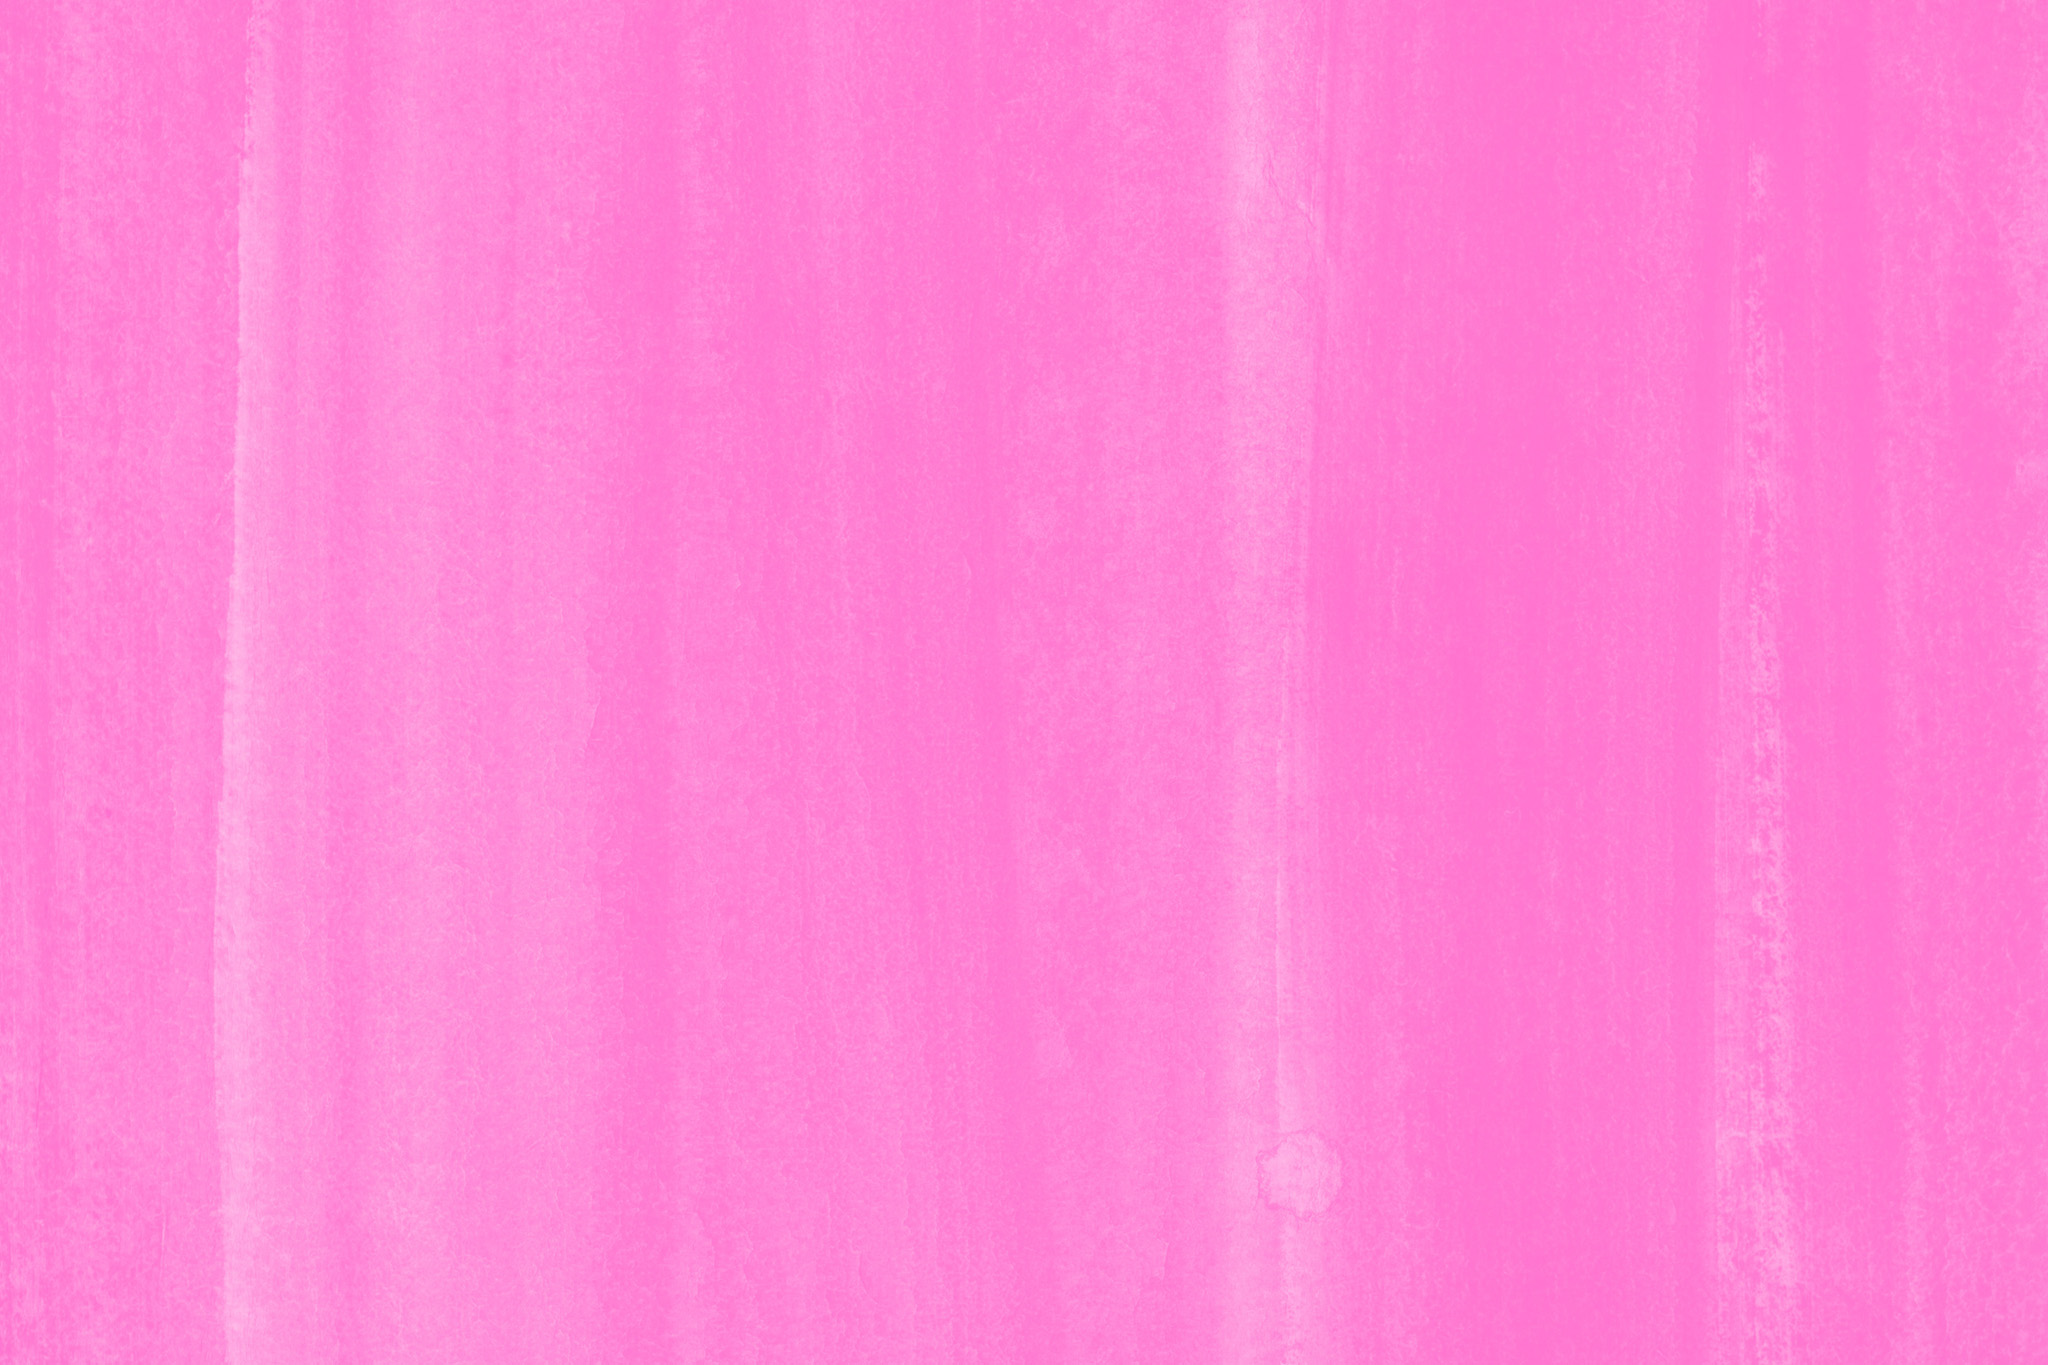 かわいいピンク色のグラデーション画像 の画像素材を無料ダウンロード 1 背景フリー素材 Beiz Images